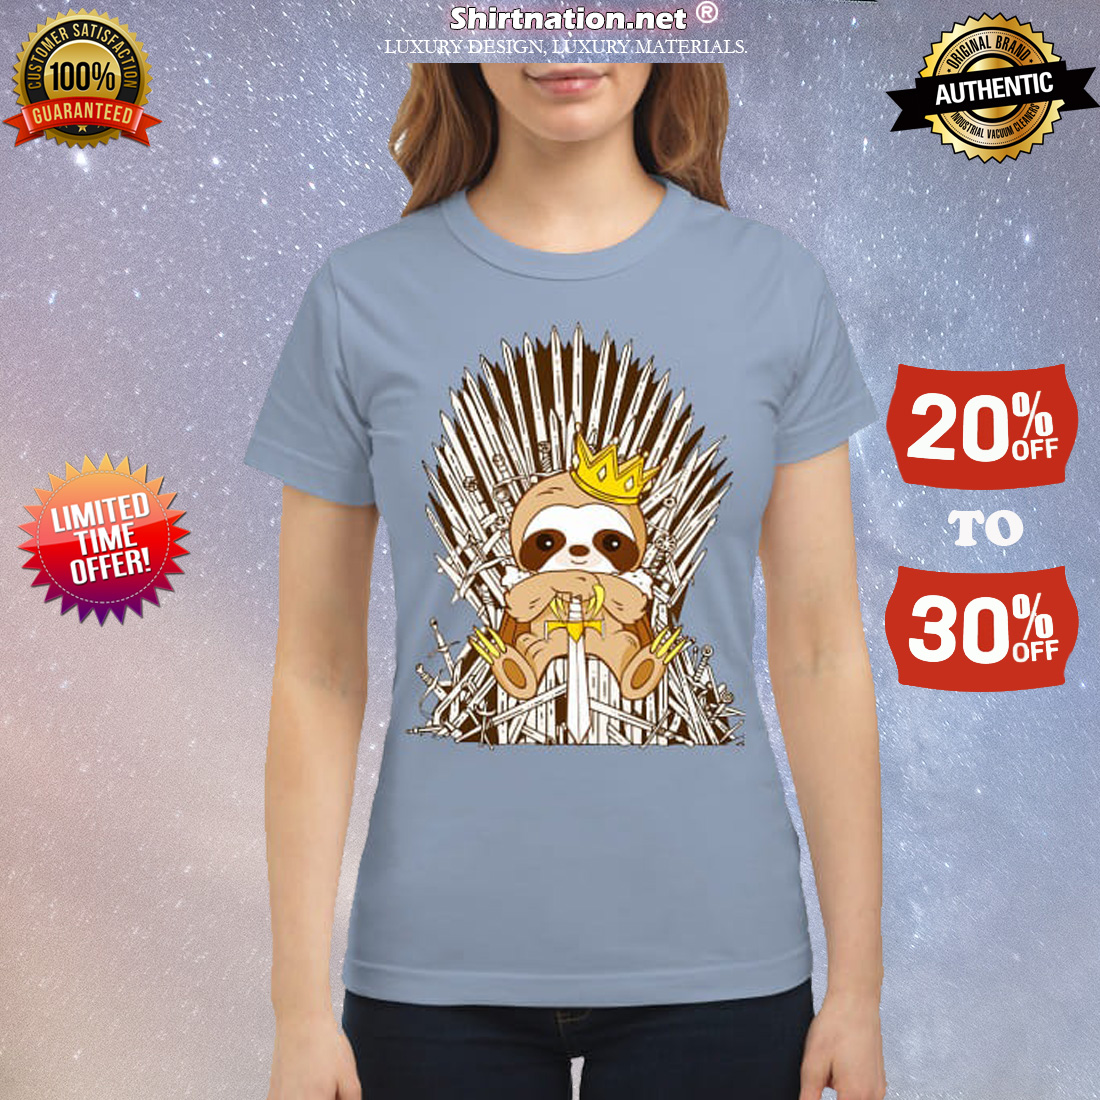 GOT Sloth king classic shirt